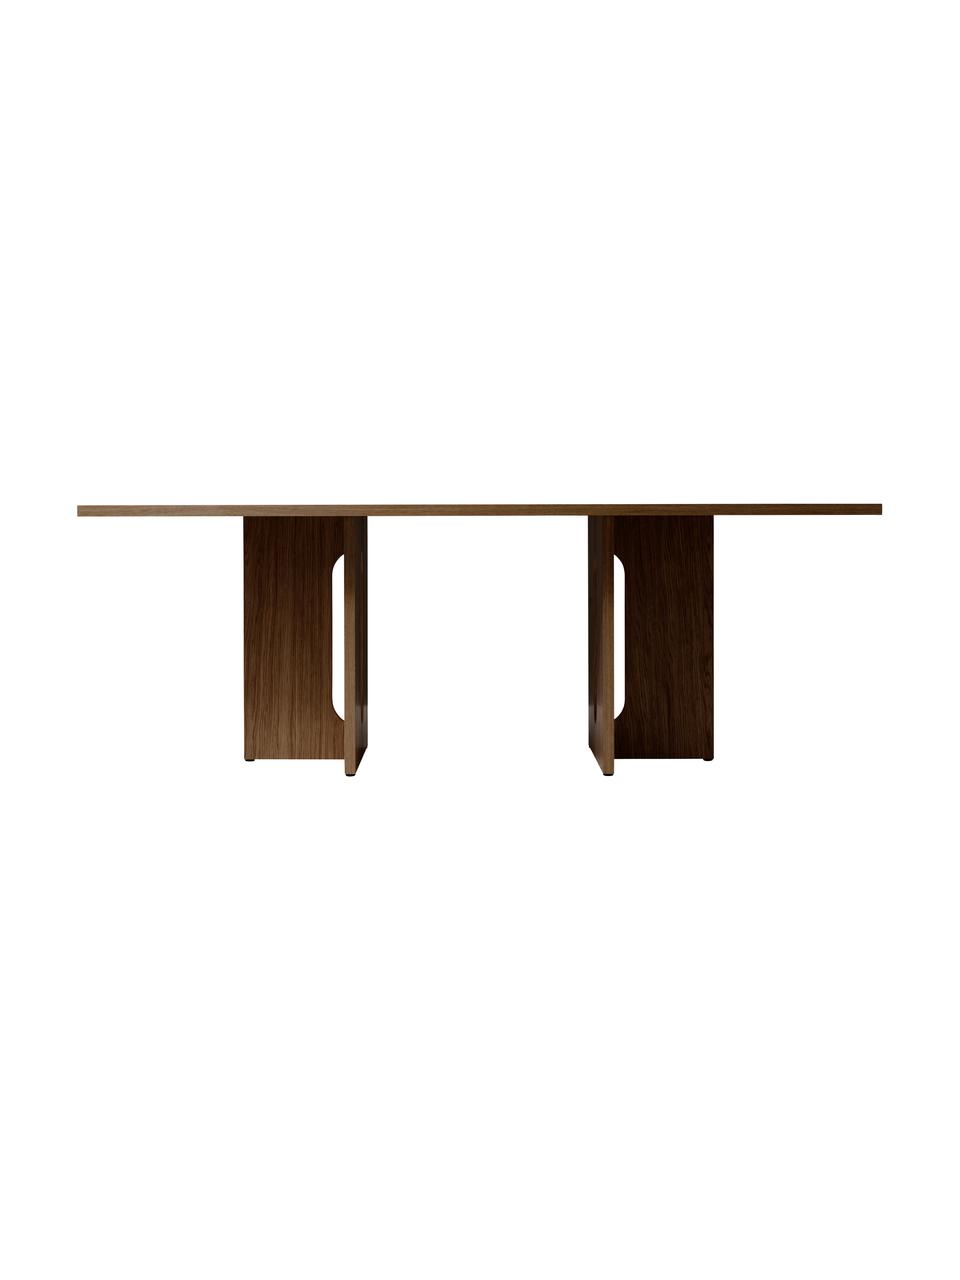 Jídelní stůl s tmavou dubovou dýhou Androgyne, MDF deska (dřevovláknitá deska střední hustoty) s dubovou dýhou, Tmavě hnědá, Š 210 cm, H 110 cm